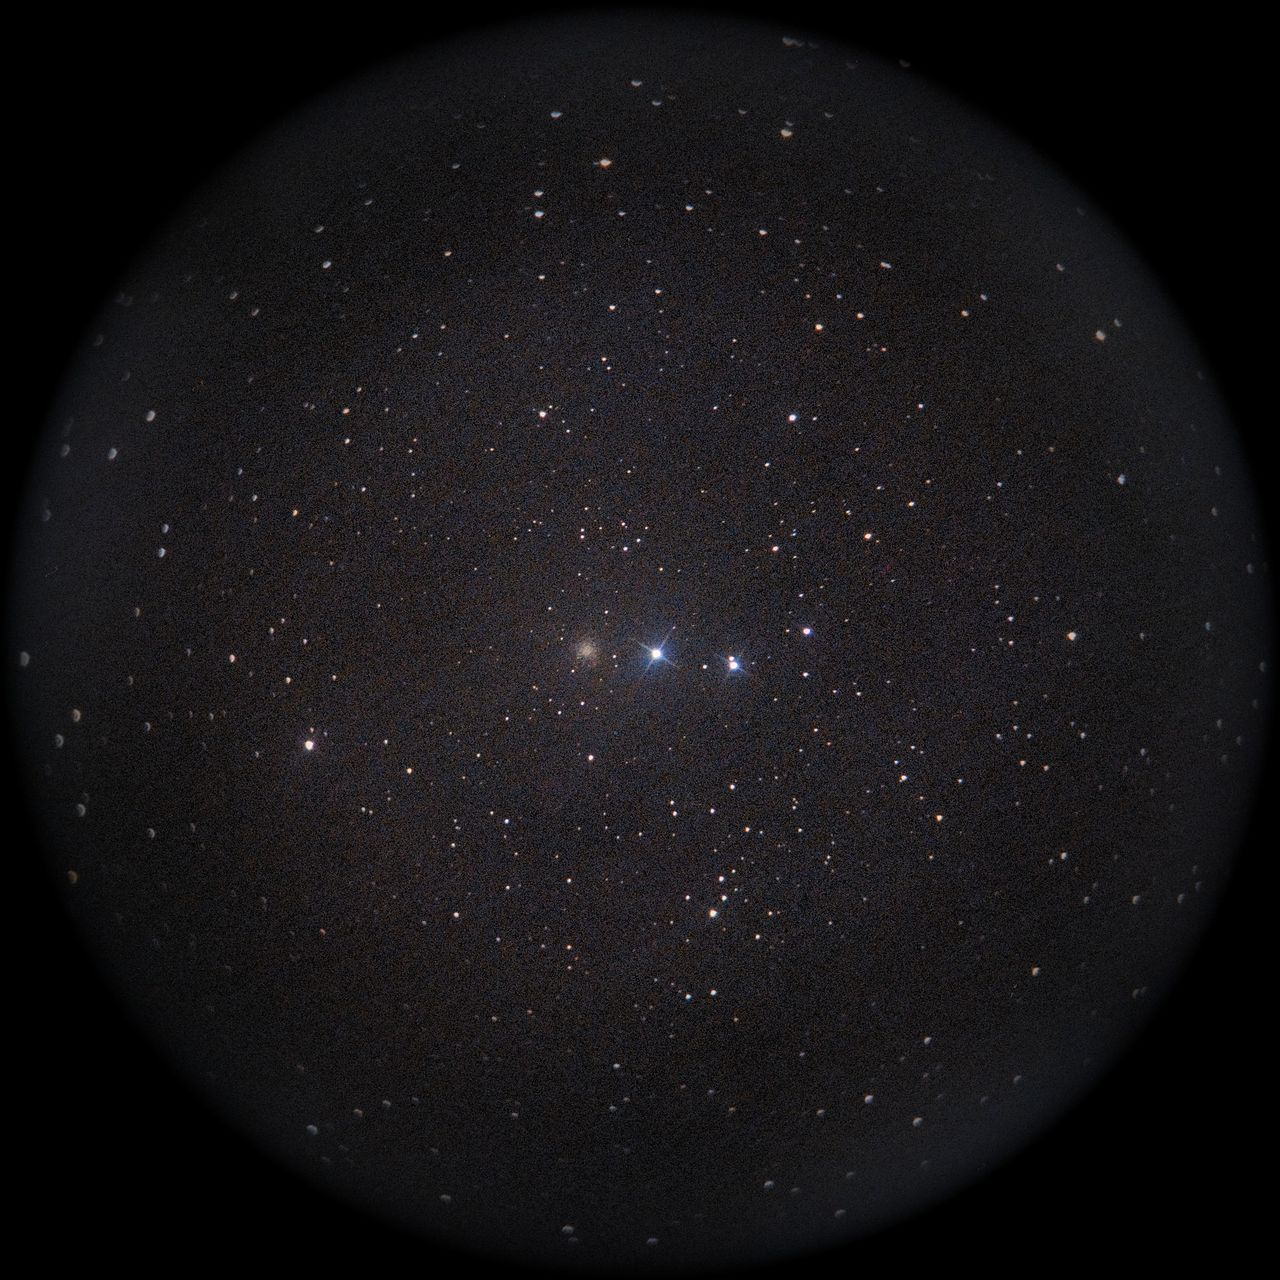 Image of NGC2419